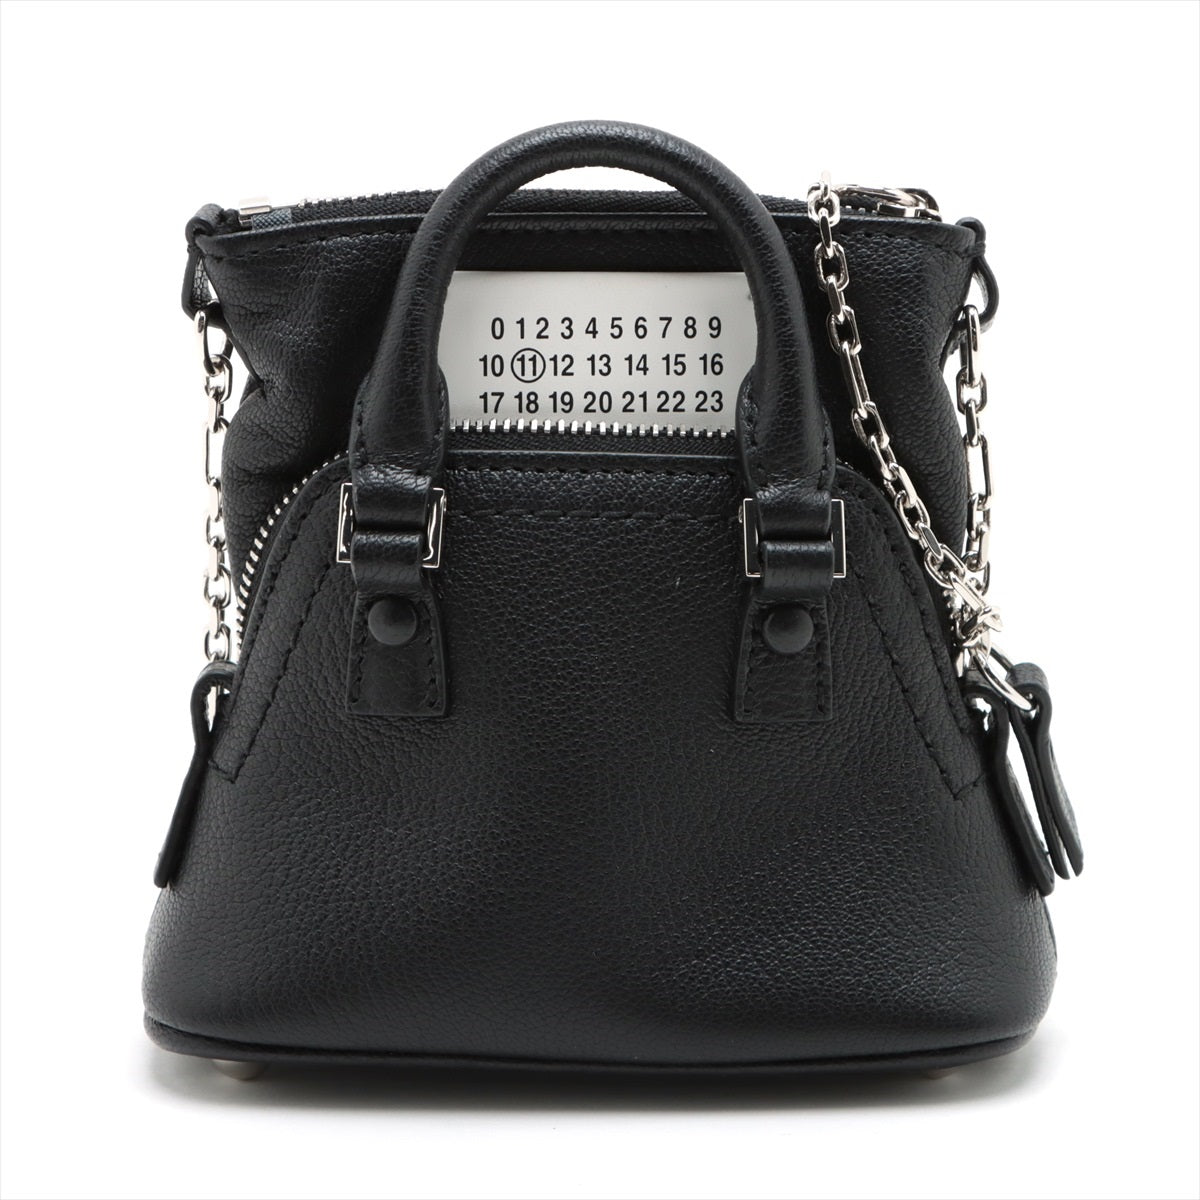 Maison Margiela 5AC Leather 2way handbag Black